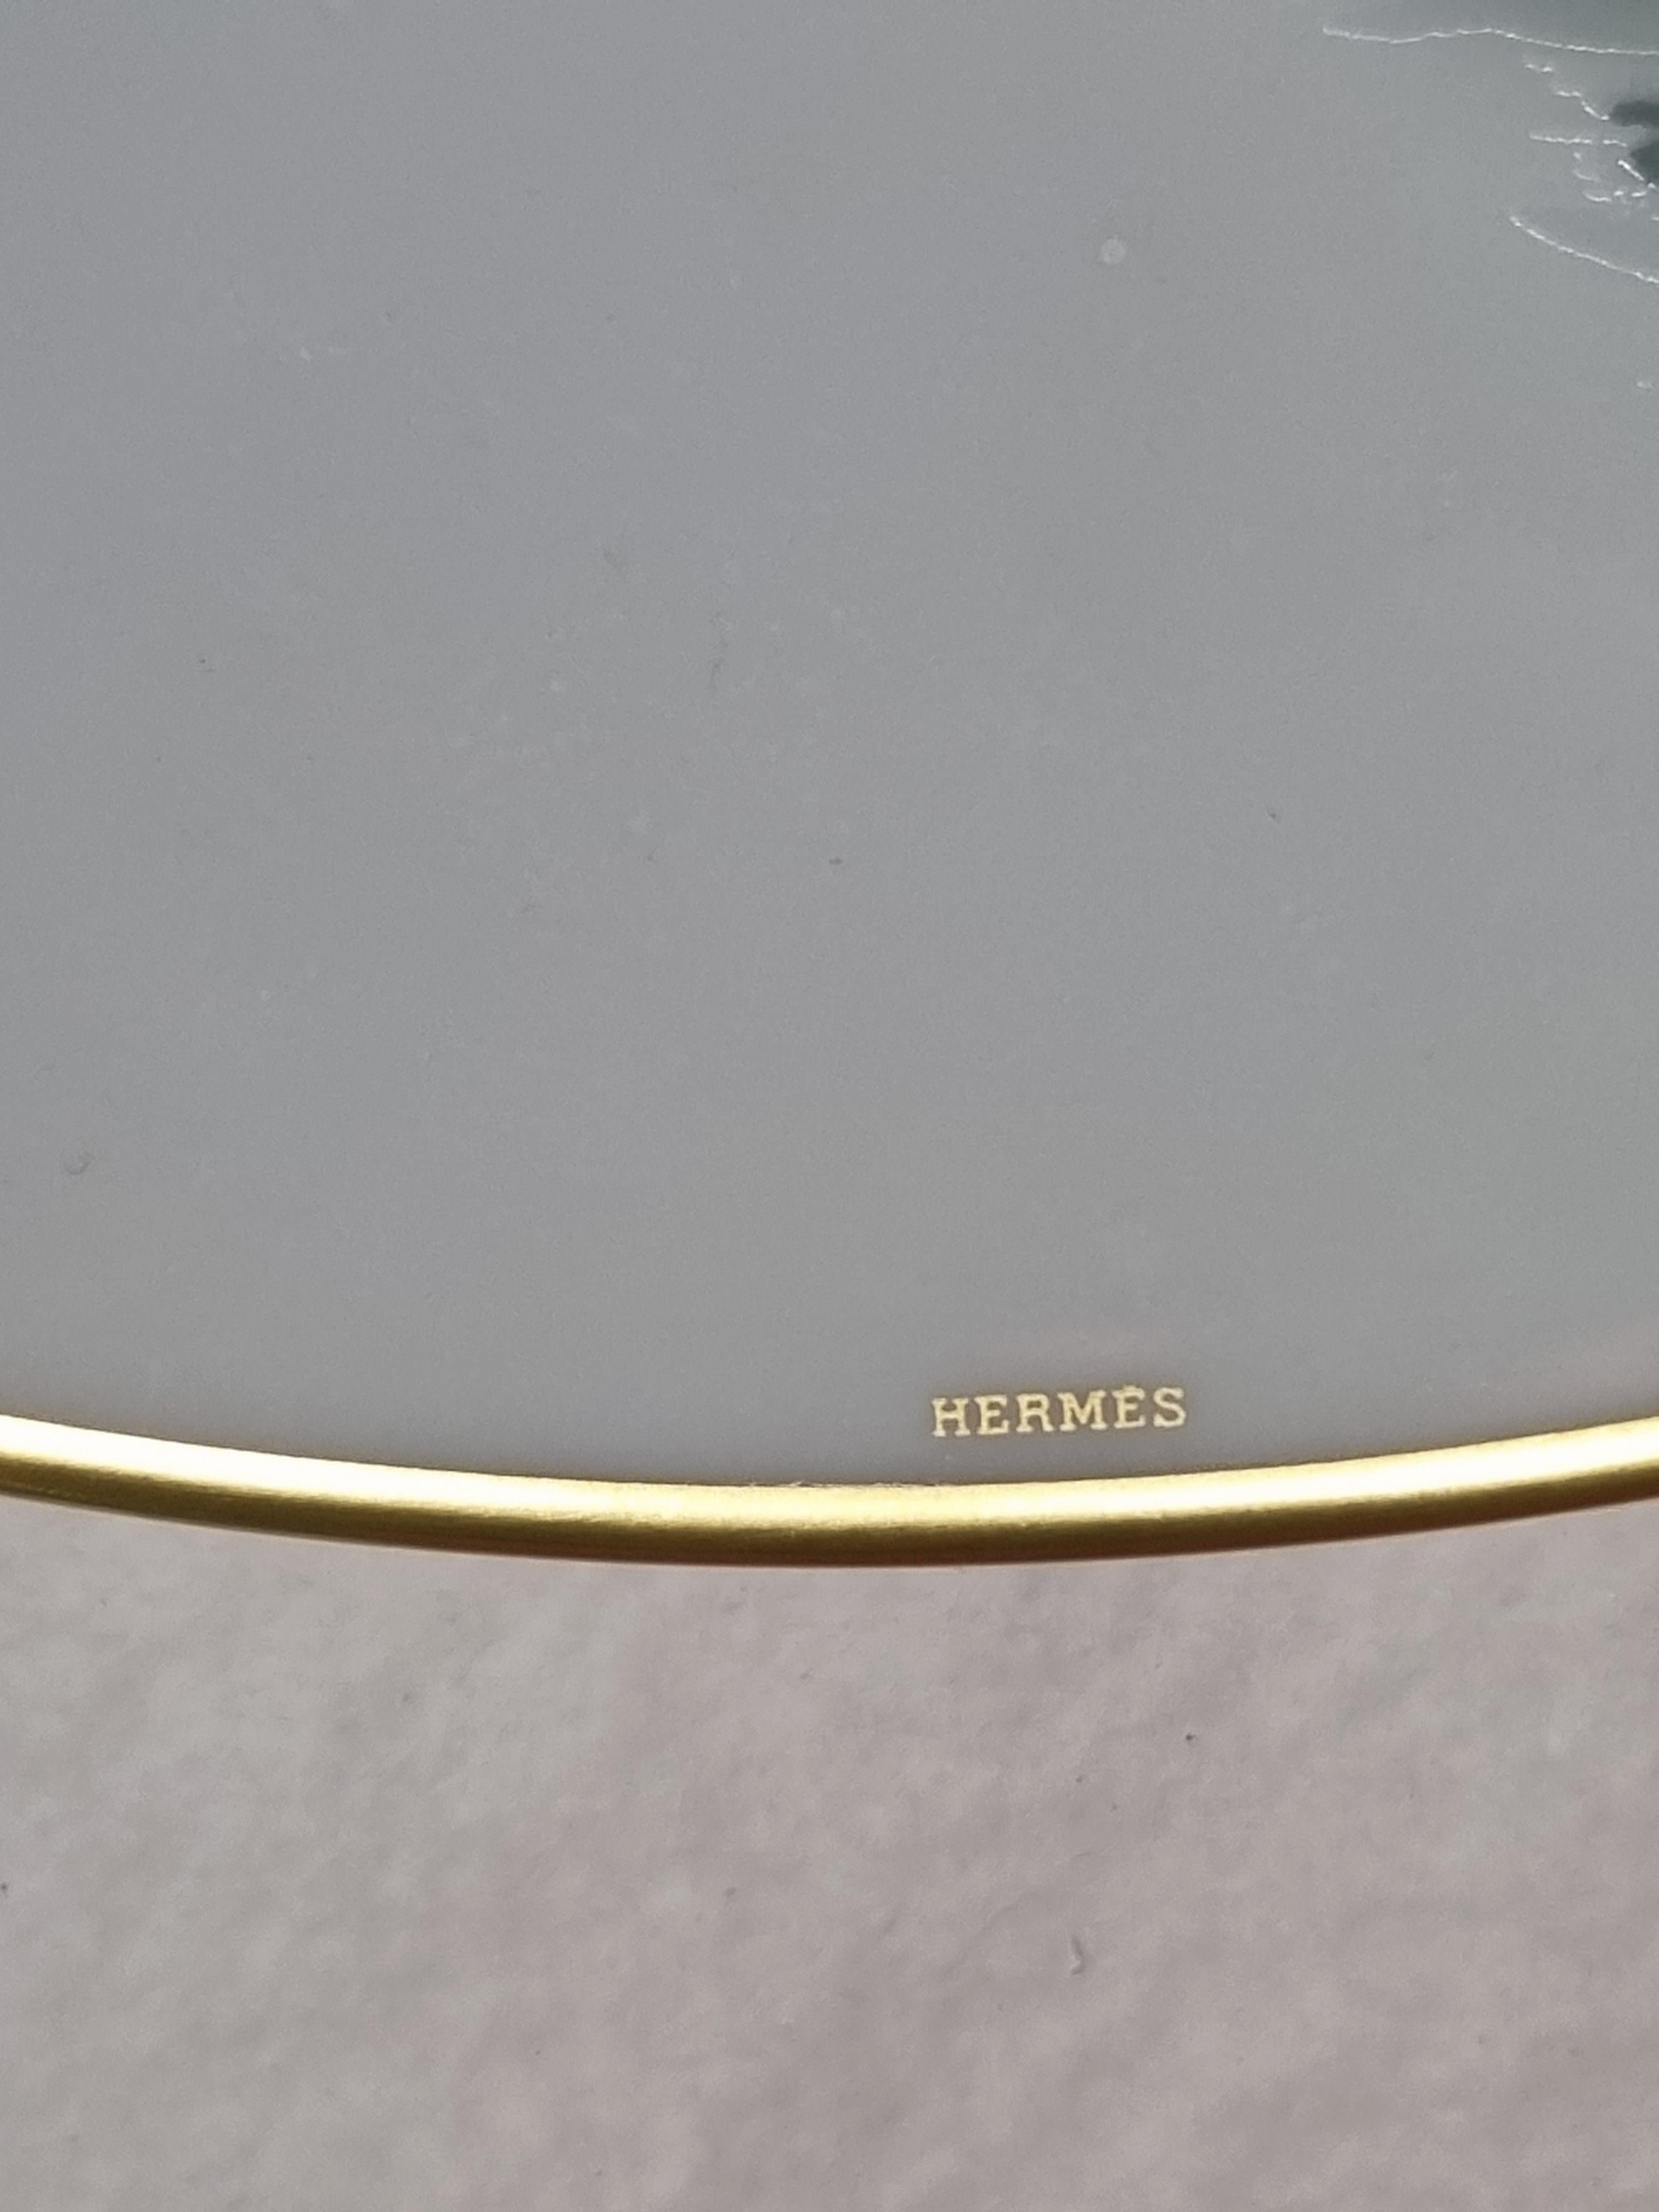 A fine set of twoHermès Cantets d'Equateur Panther dinner plates.
In the original Hermès orange paper box.
Dimension 10.6